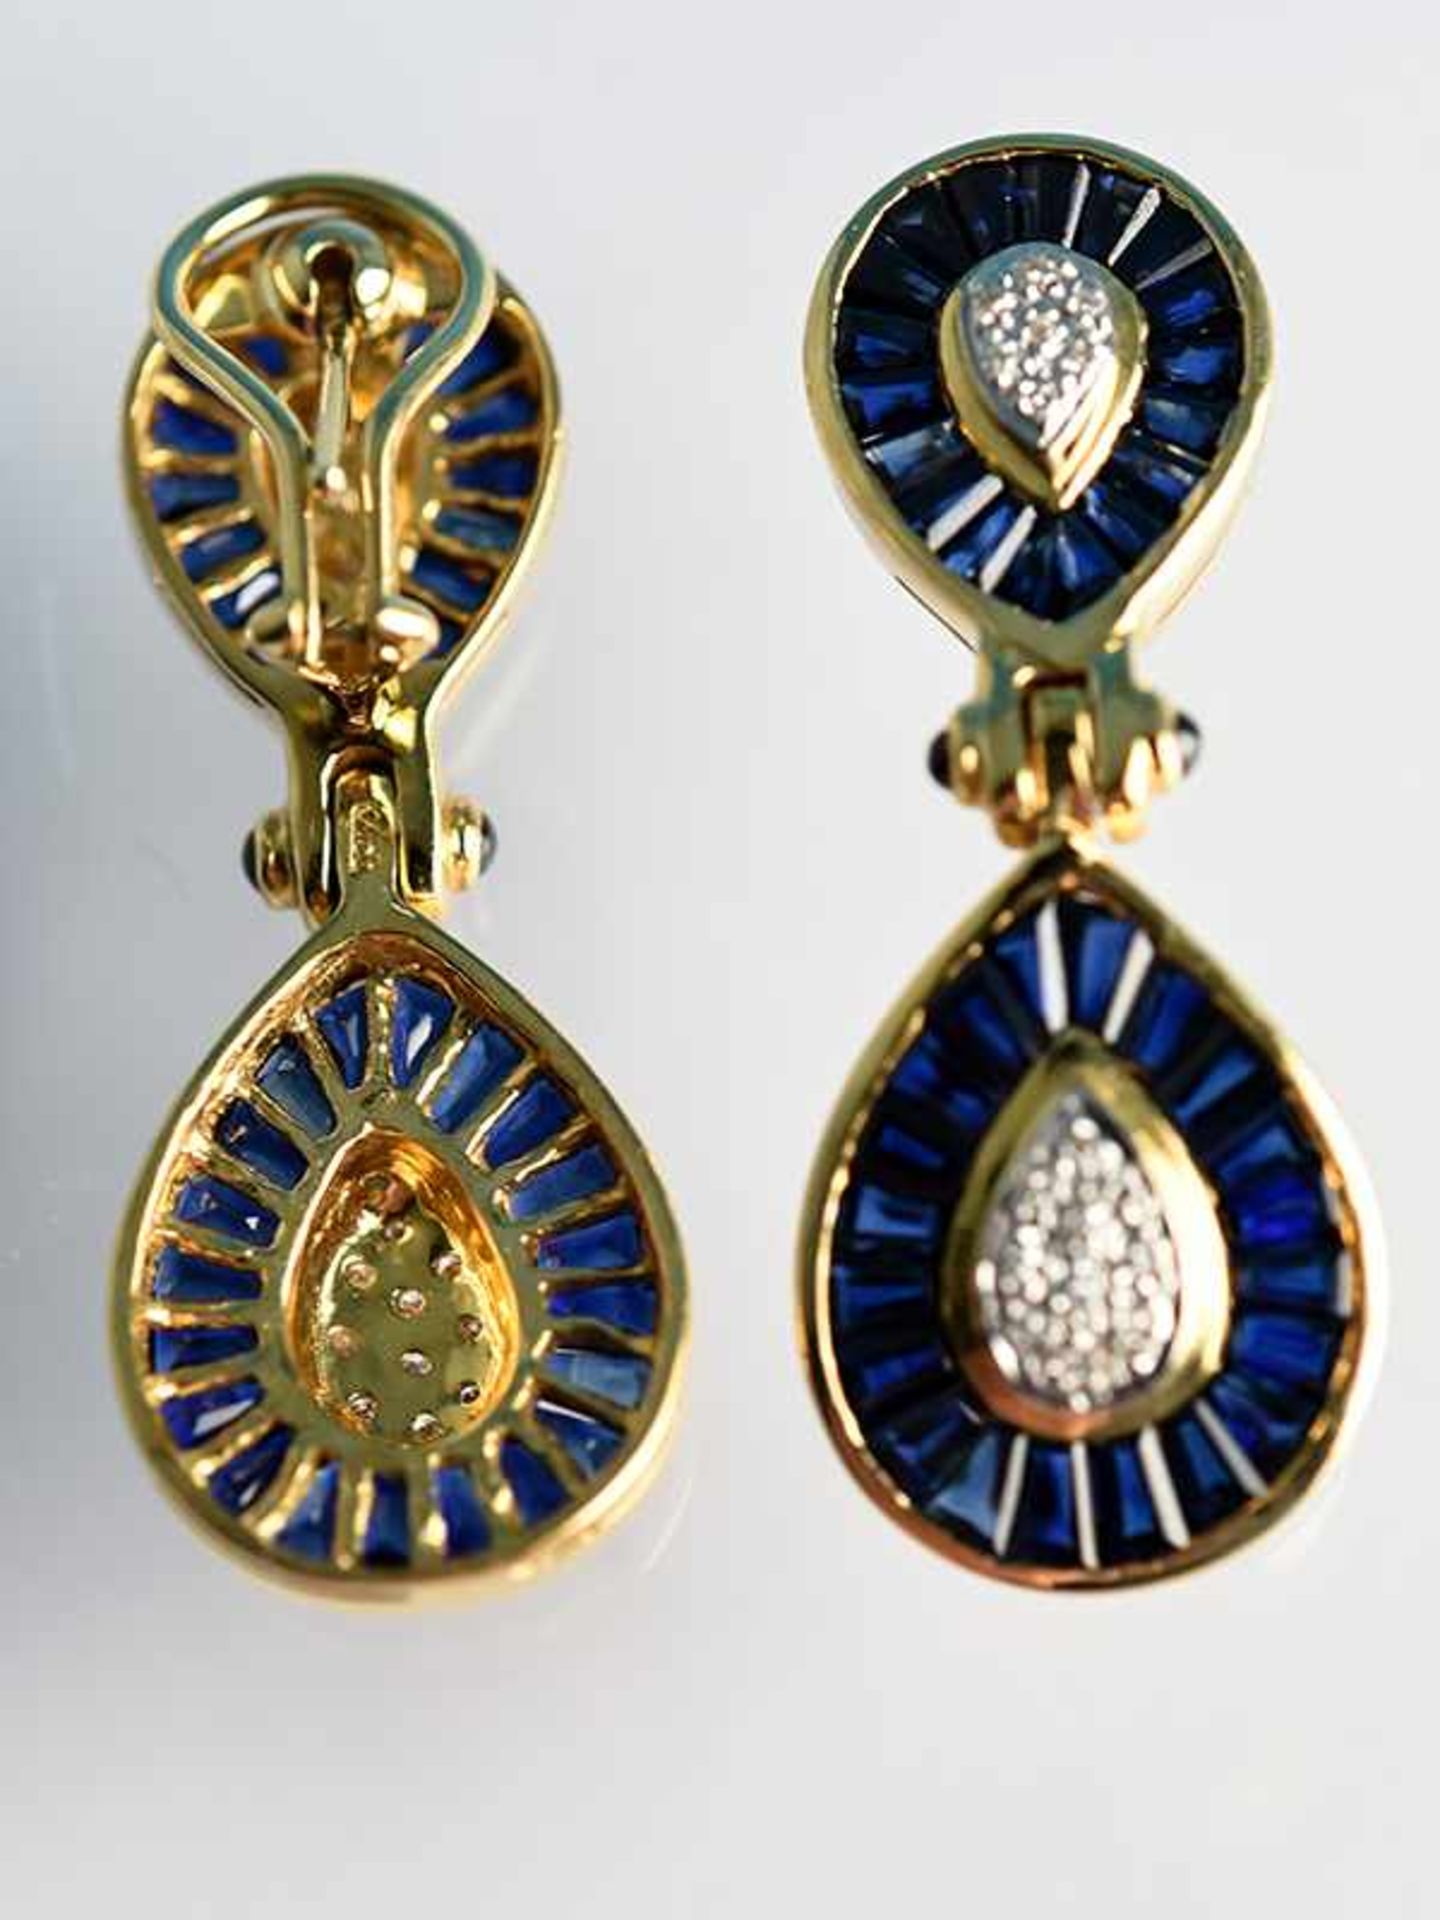 Paar Ohrgehänge mit Saphiren und Diamanten, 80- er Jahre 750/- Gelbgold. Gesamtgewicht ca. 18,1 g. - Bild 5 aus 5